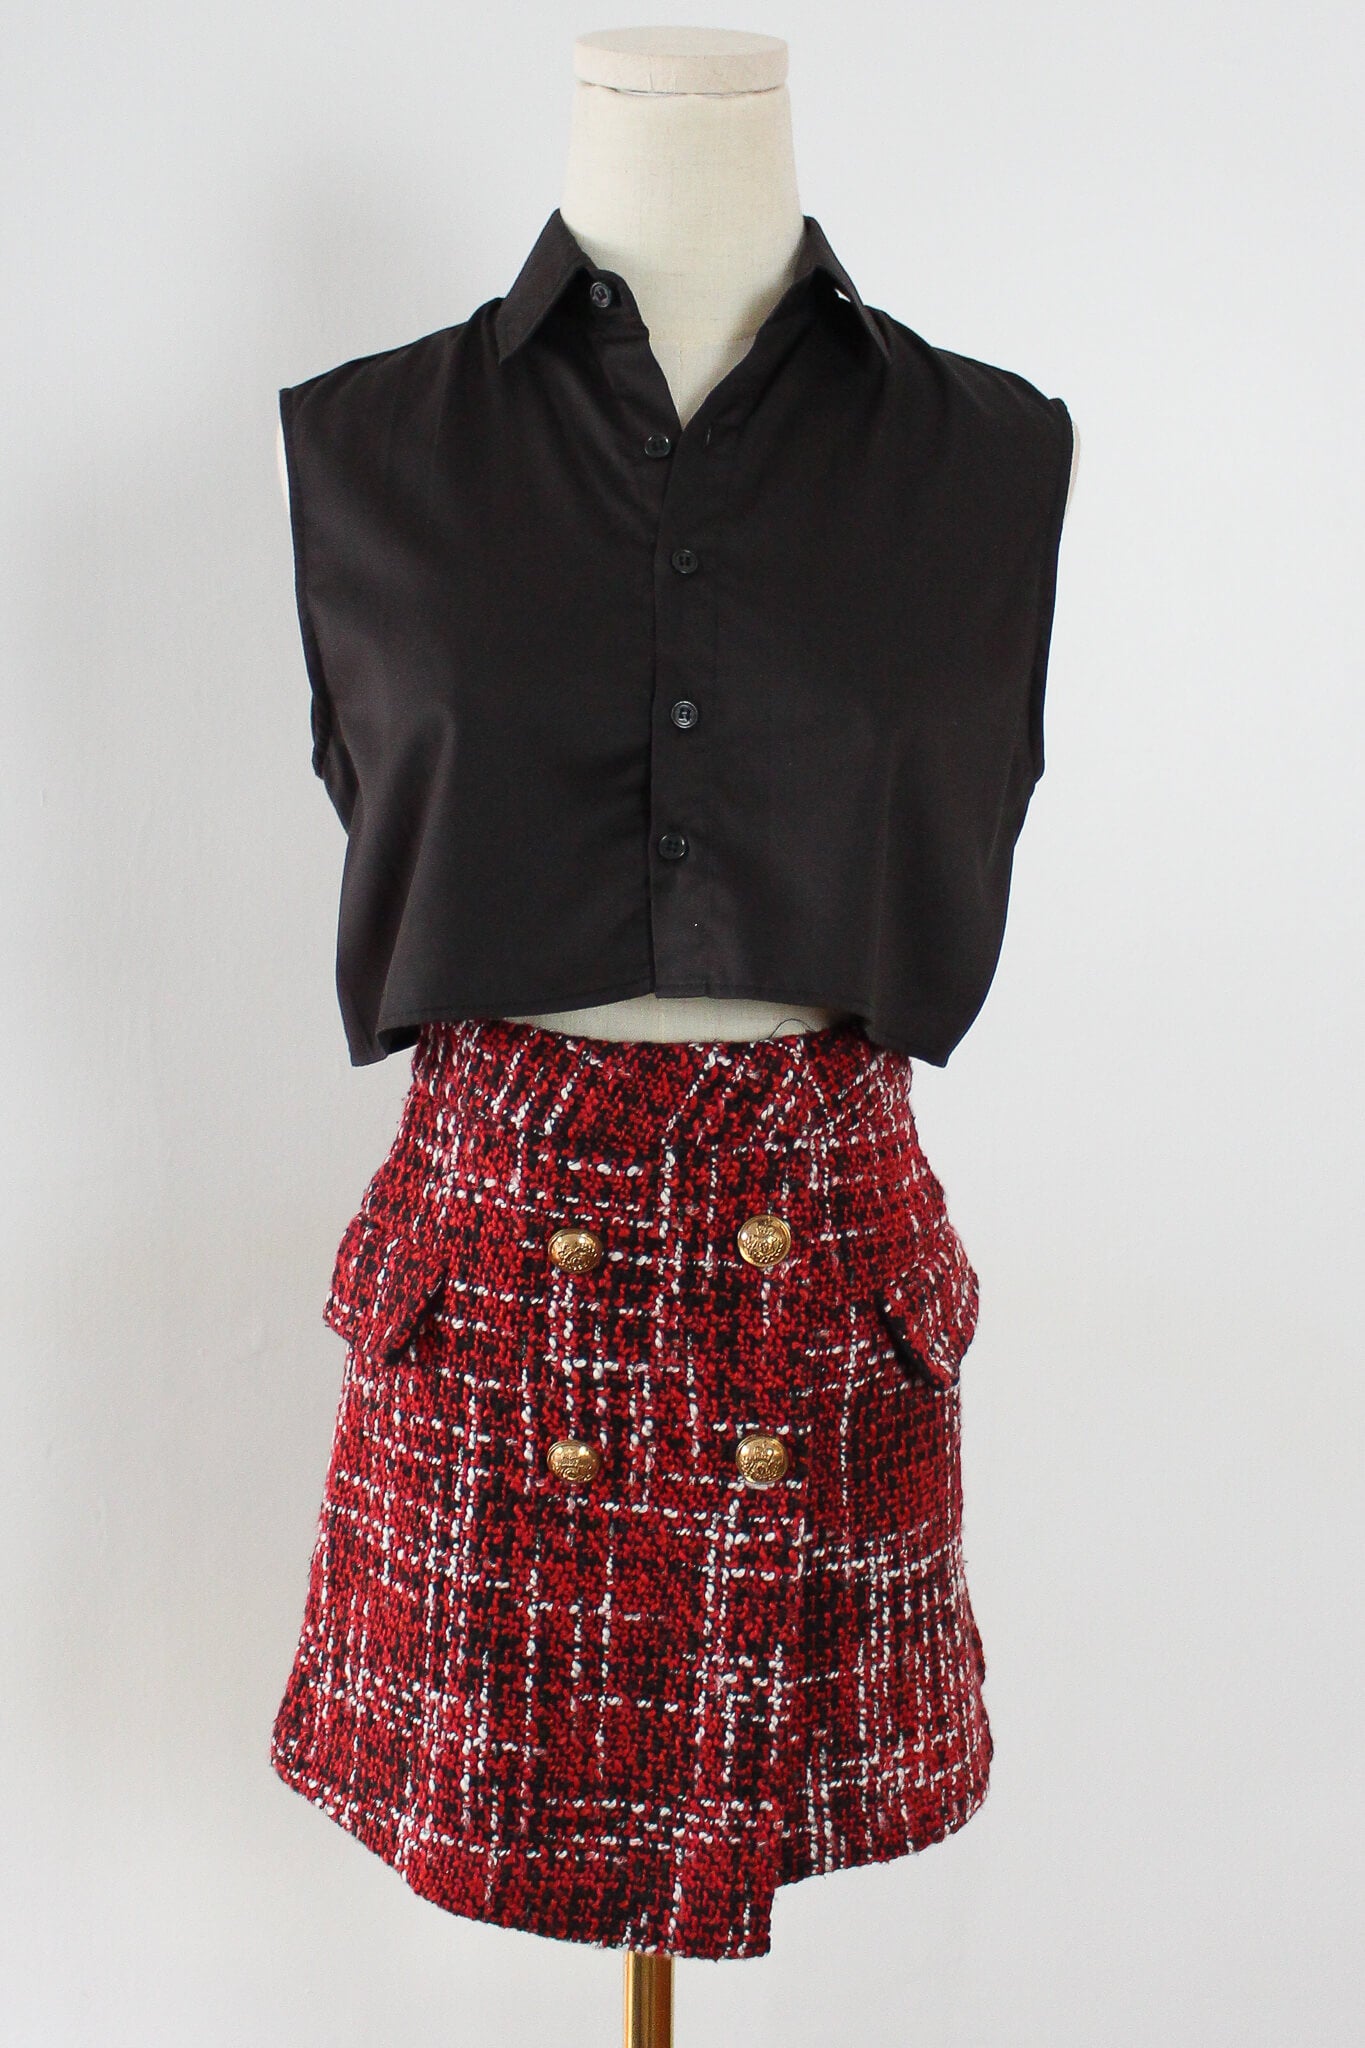 tartan pattern skirt with gold buttons